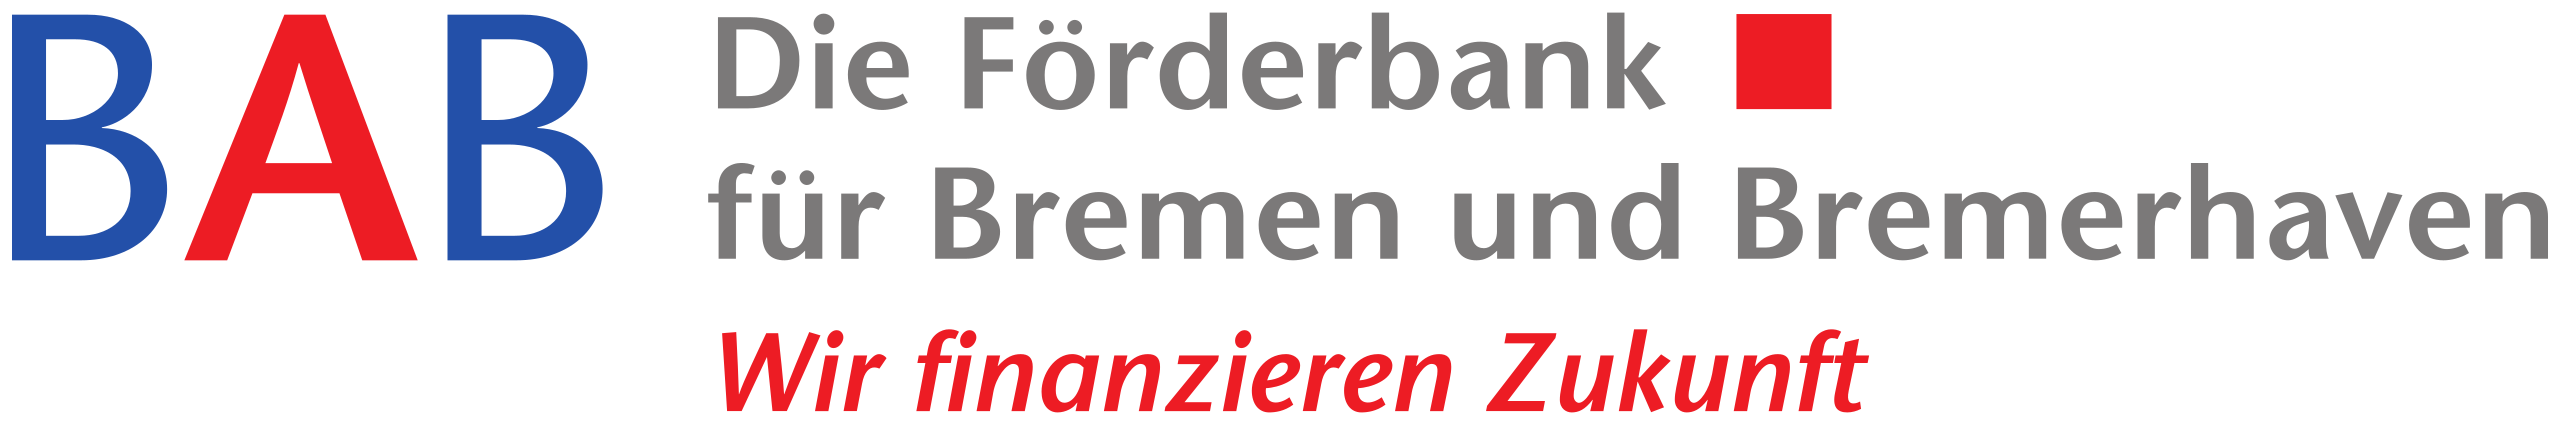 Die Förderbank für Bremen und Bremerhaven